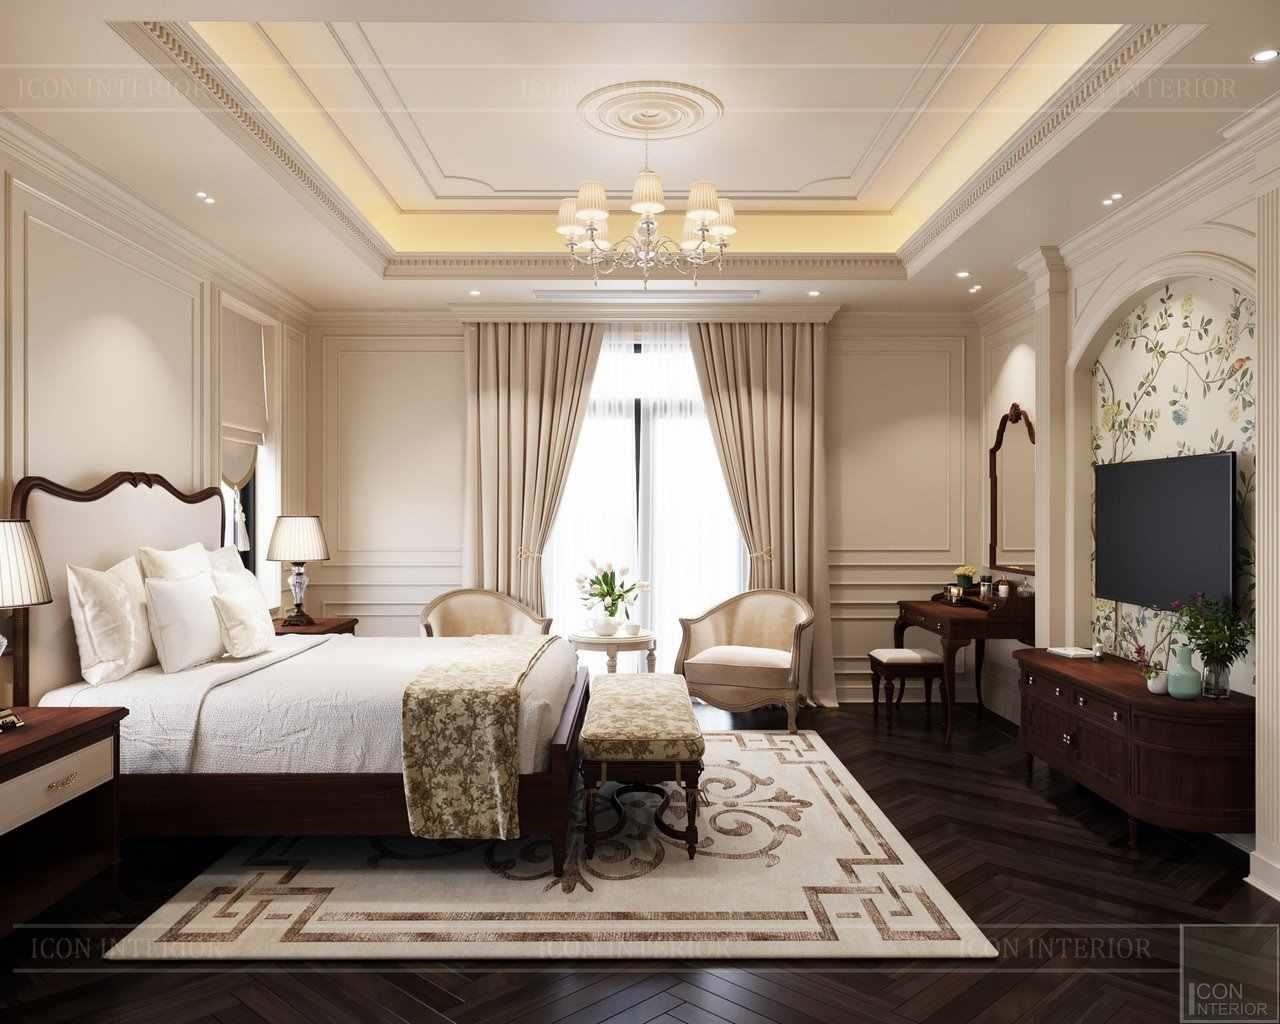 Phòng ngủ được trang trí bằng màu sắc ấm áp của gỗ cây óc chó, mang đến cho người dùng giấc ngủ ngon lành và thư thái hơn.